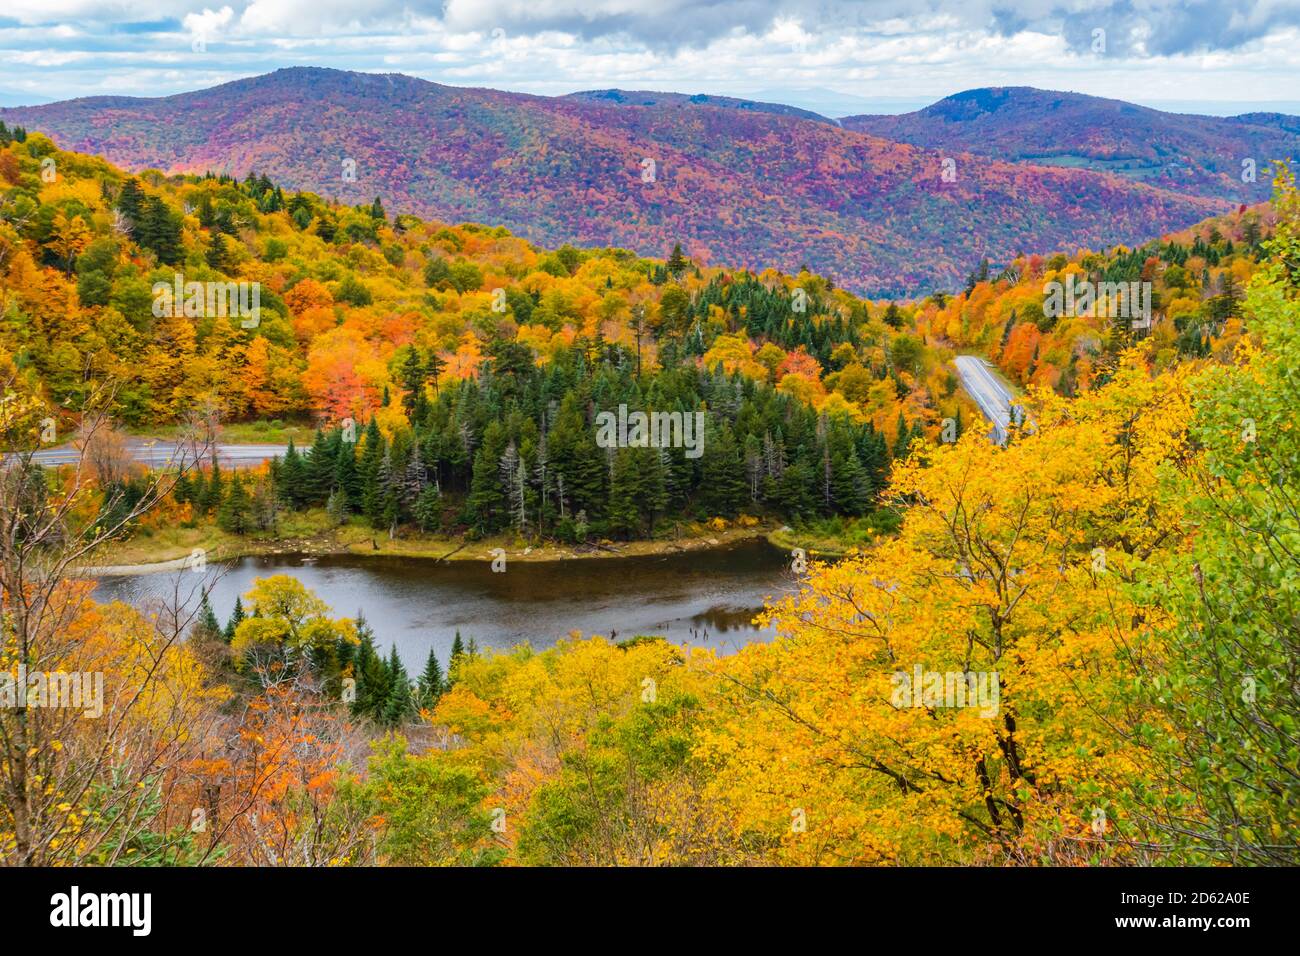 La route serpente à travers le trou des Appalaches, un col de montagne dans les montagnes vertes du Vermont, dans un feuillage d'automne de couleur vive Banque D'Images